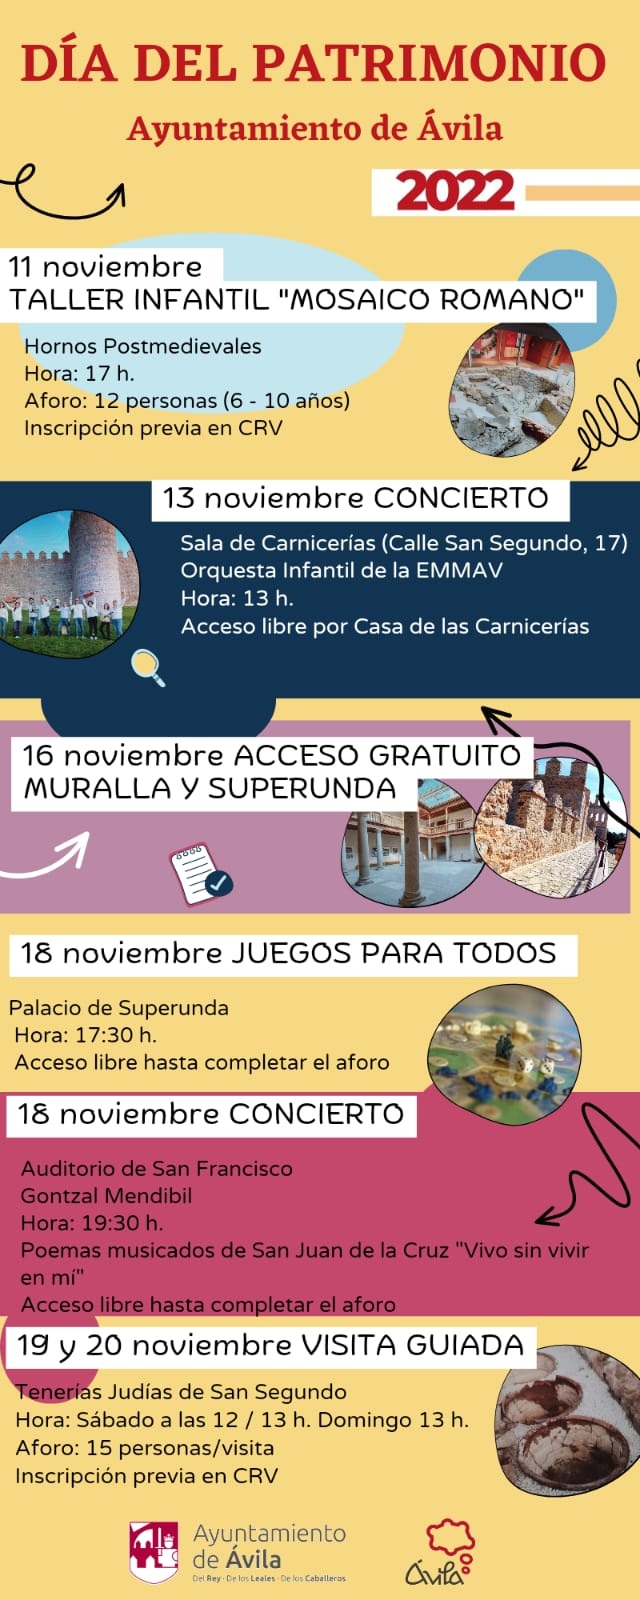 Día del Patrimonio. Visita Tenerías Judías de San Segundo Ávila Turismo